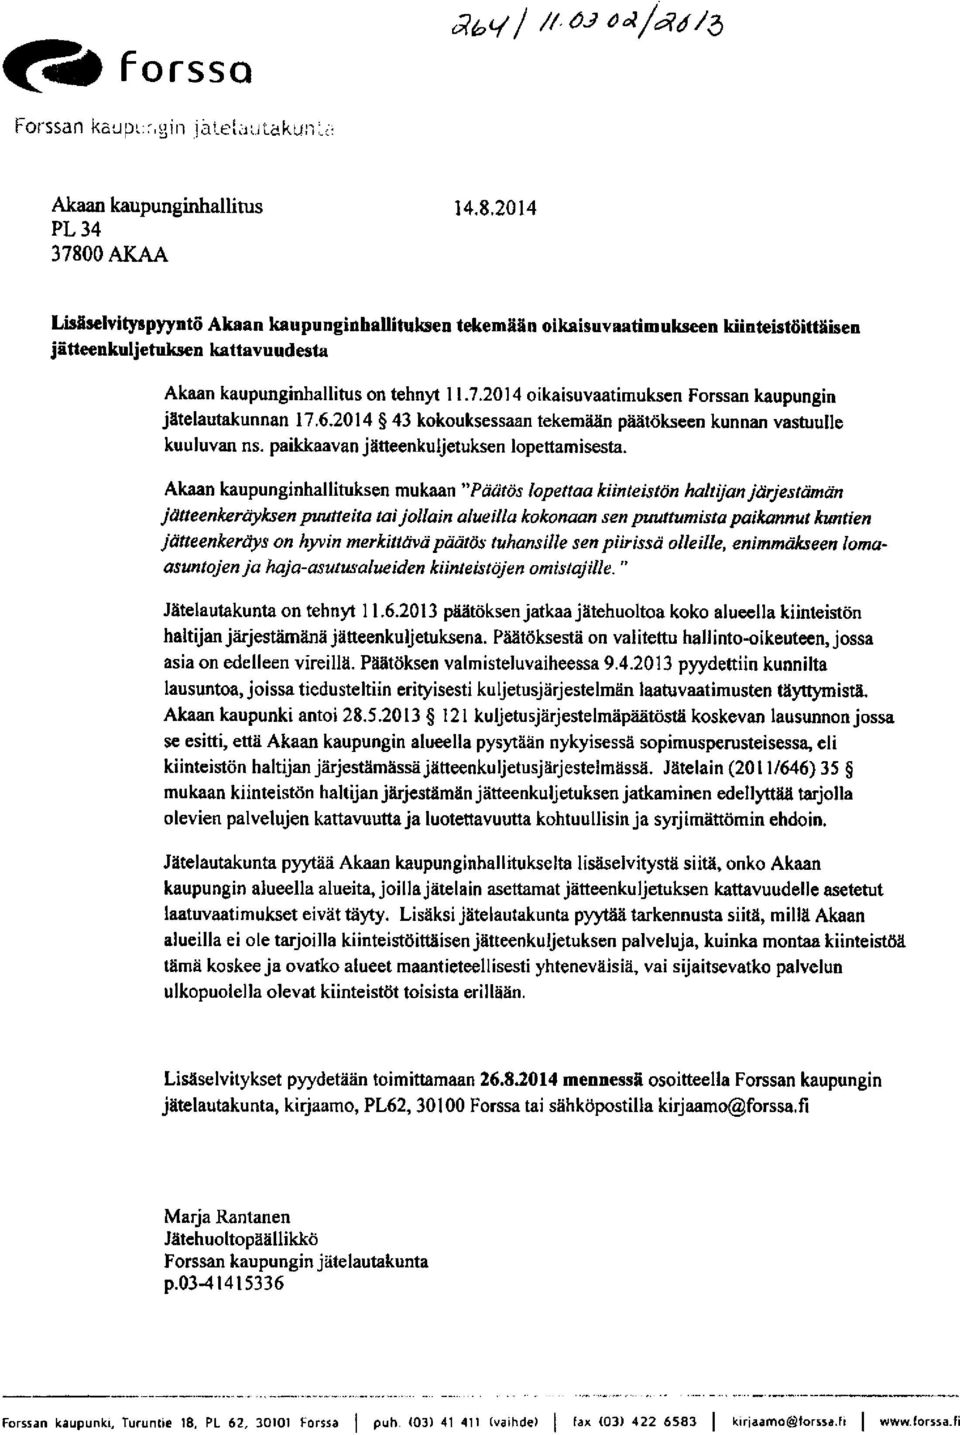 2014 oikaisuvaatimuksen Forssan kaupungin jätelautakunnan 17.6.2014 43 kokouksessaan tekemään päätökseen kunnan vastuulle kuuluvan ns. paikkaavan jätteenkuljetuksen lopettamisesta.